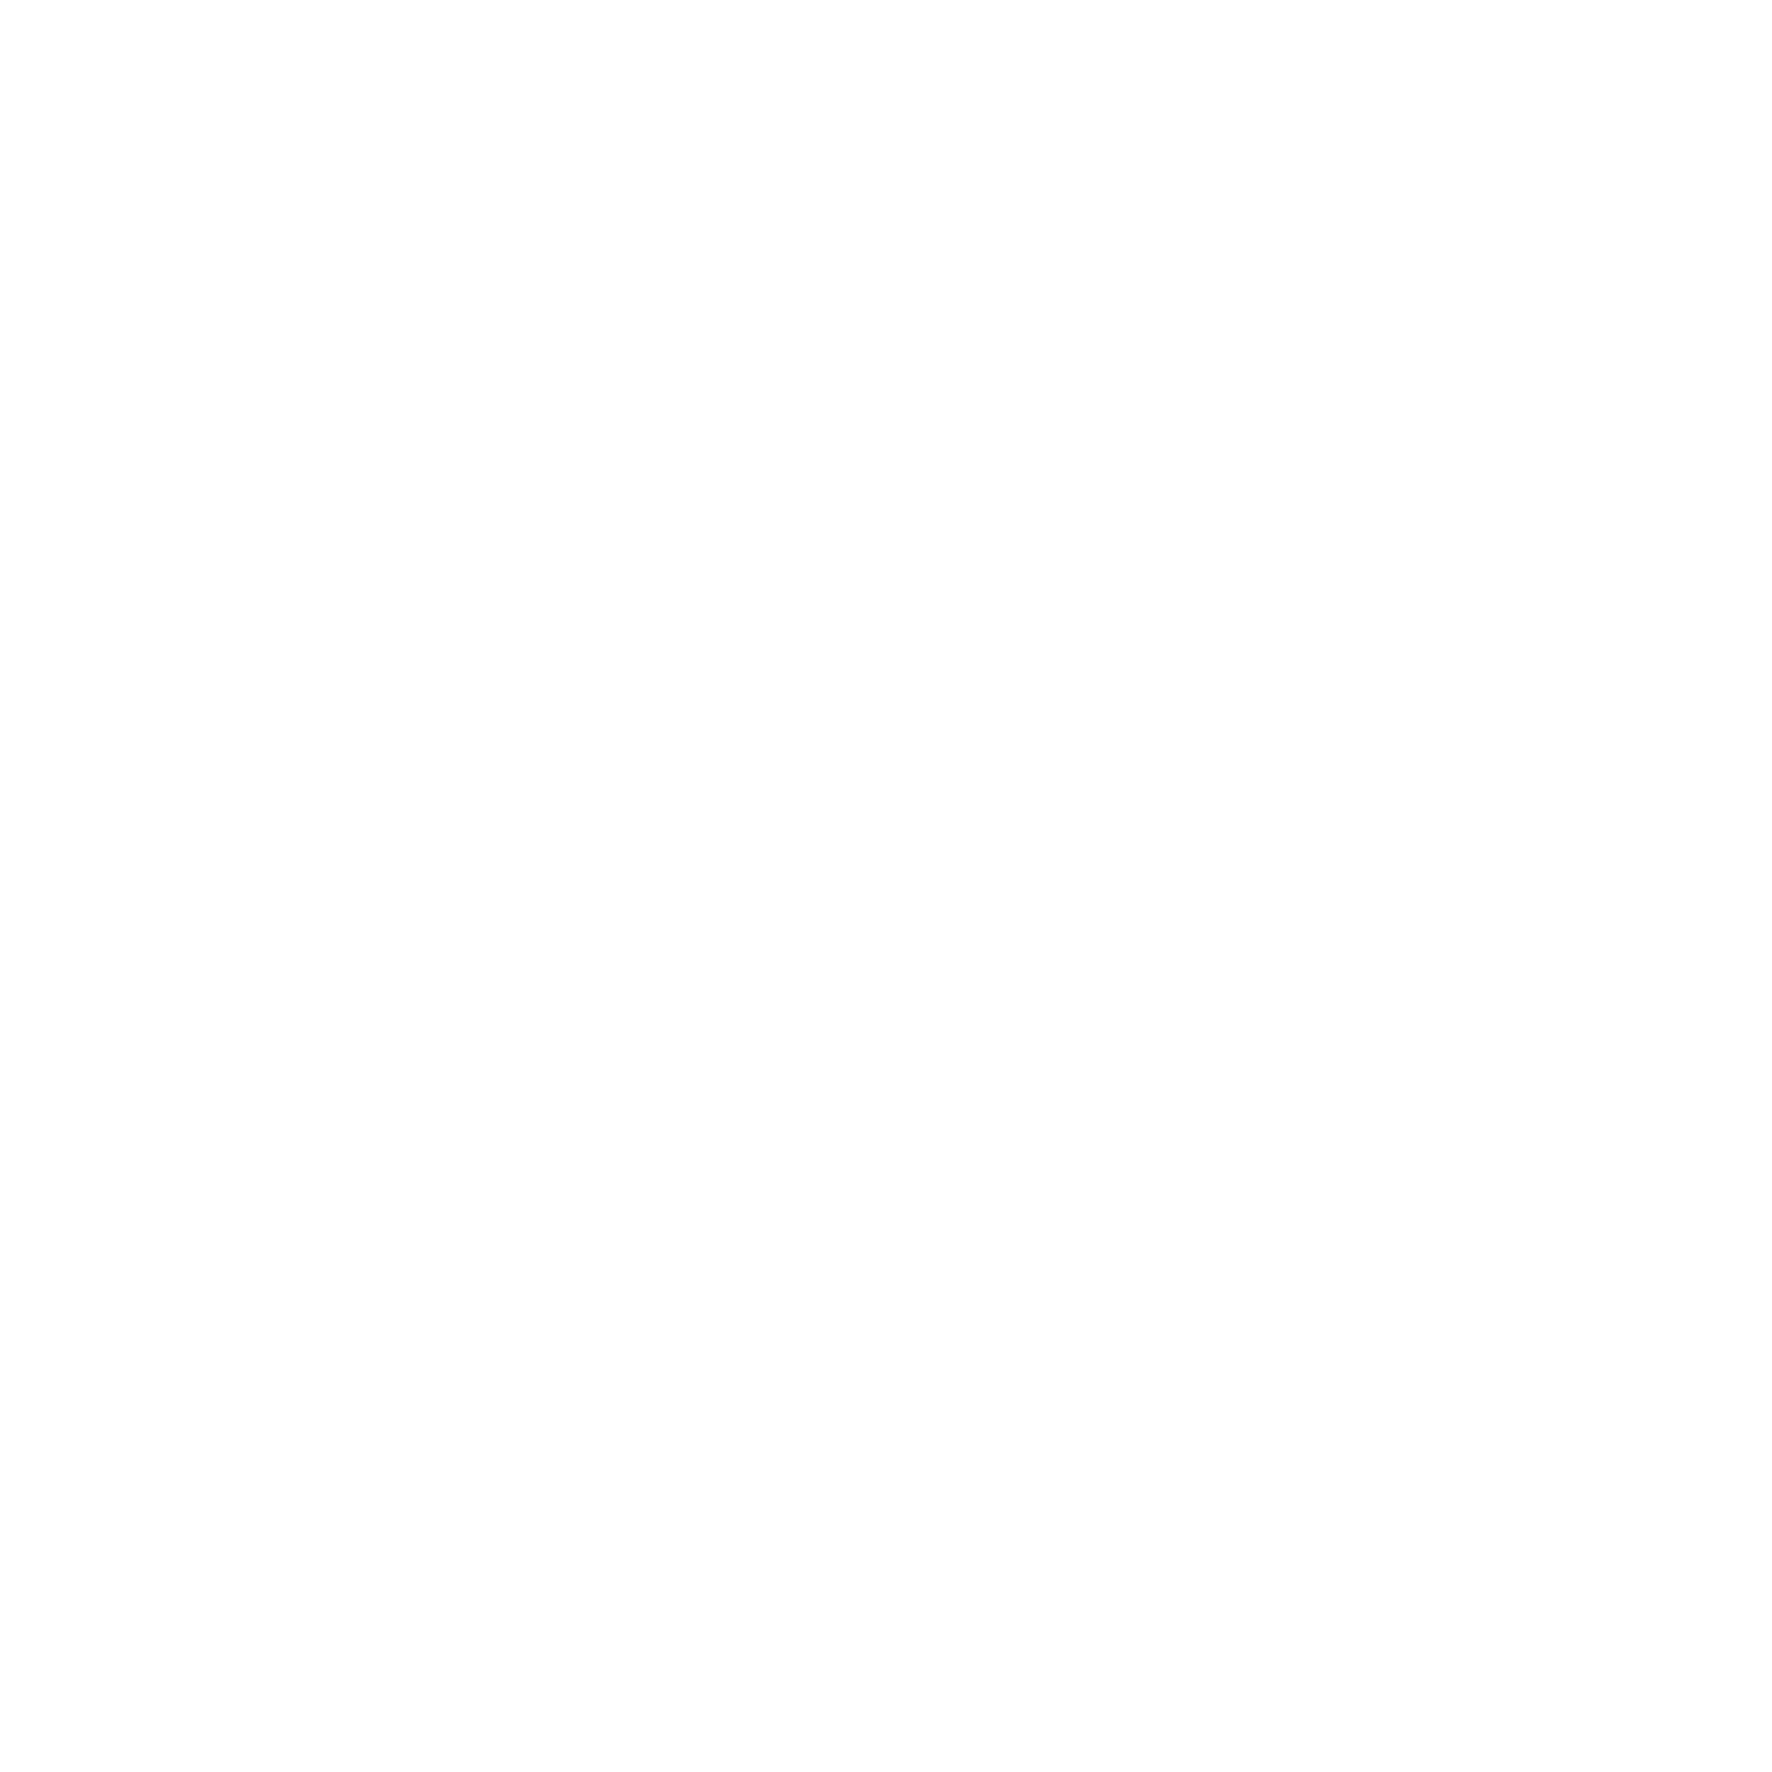 Al Khumra